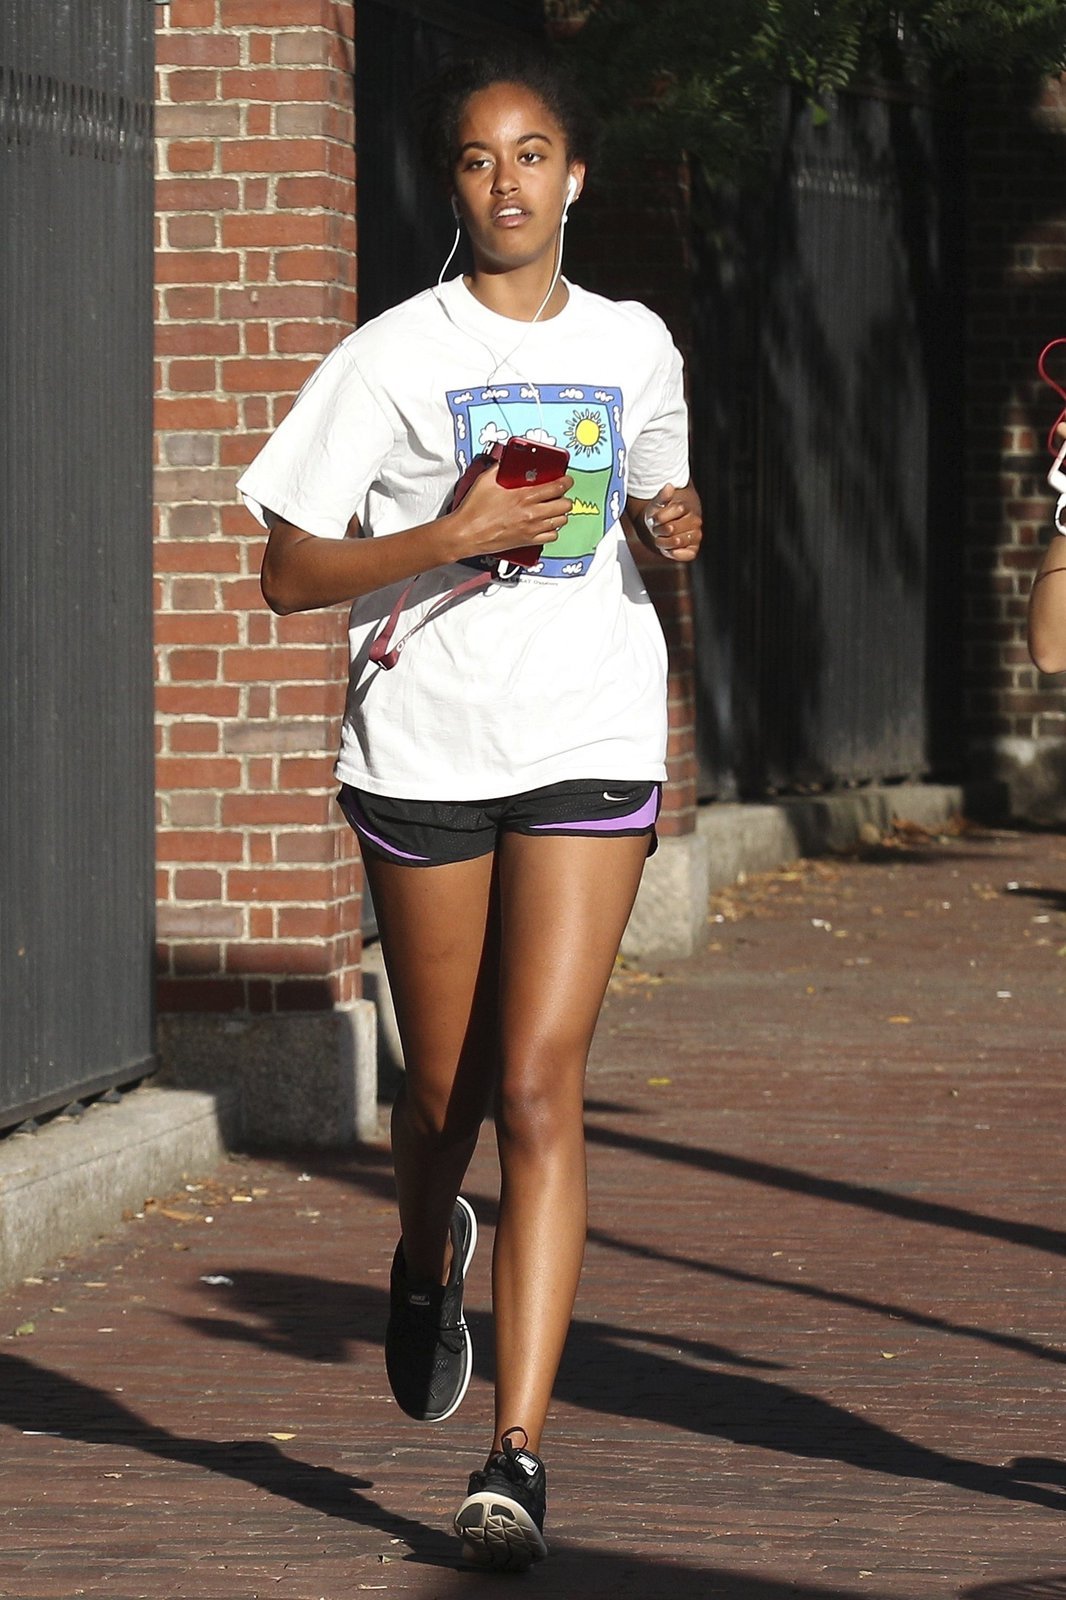 Obamova dcera na výklusu v ulicích Bostonu.